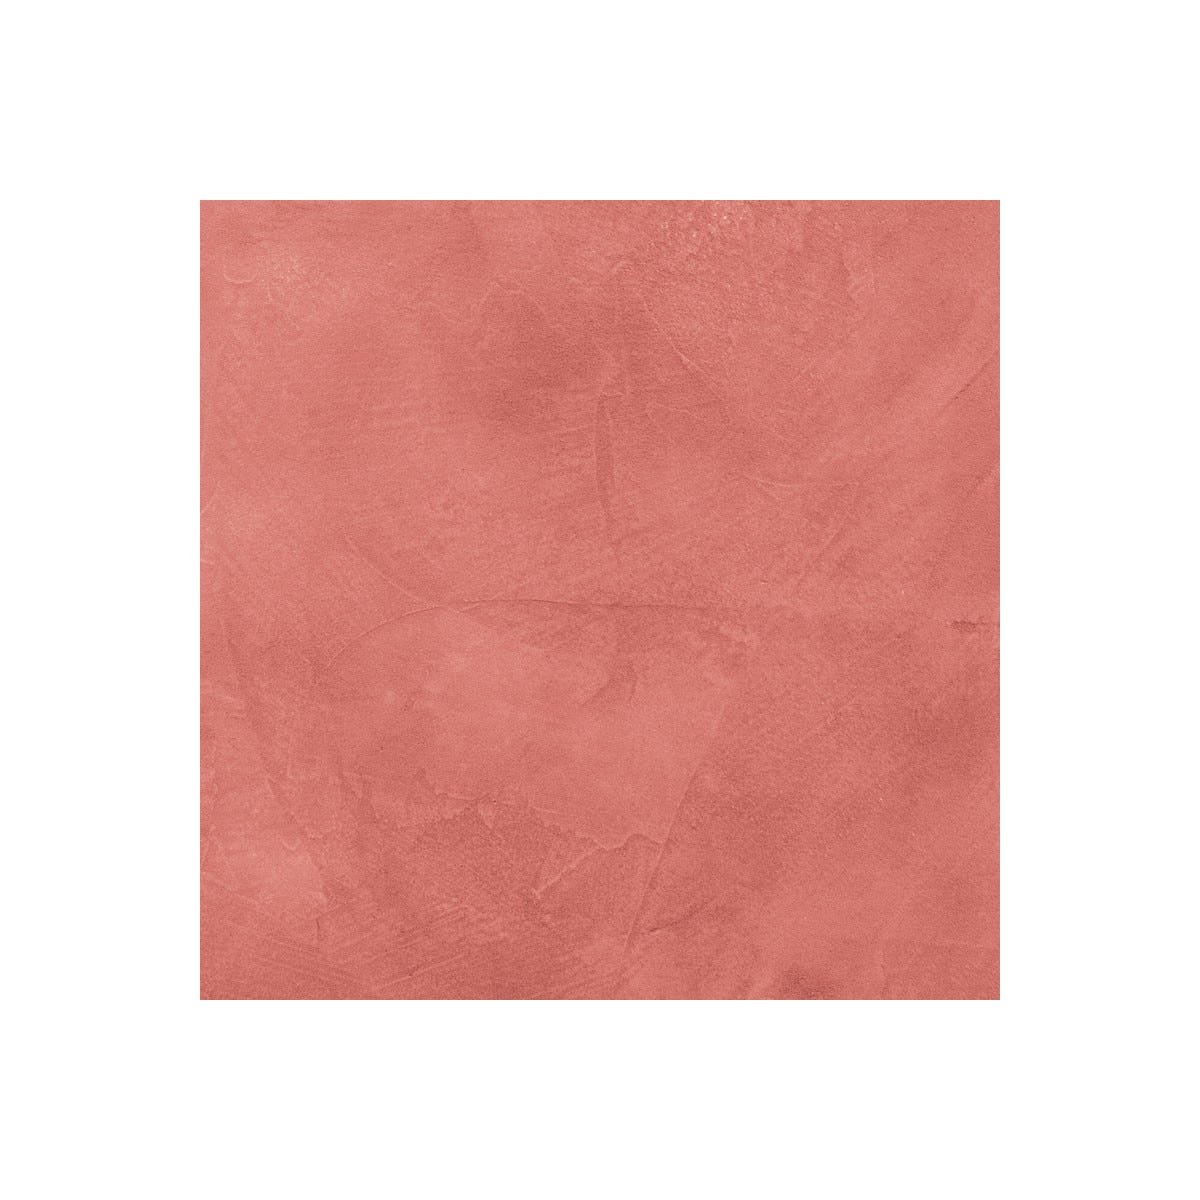 Béton Ciré Escalier - Complet primaire et vernis de finition - En neuf ou rénovation Papaye Rose Orange - 5 m² (en 2 couches)ARCANE INDUSTRIES 2